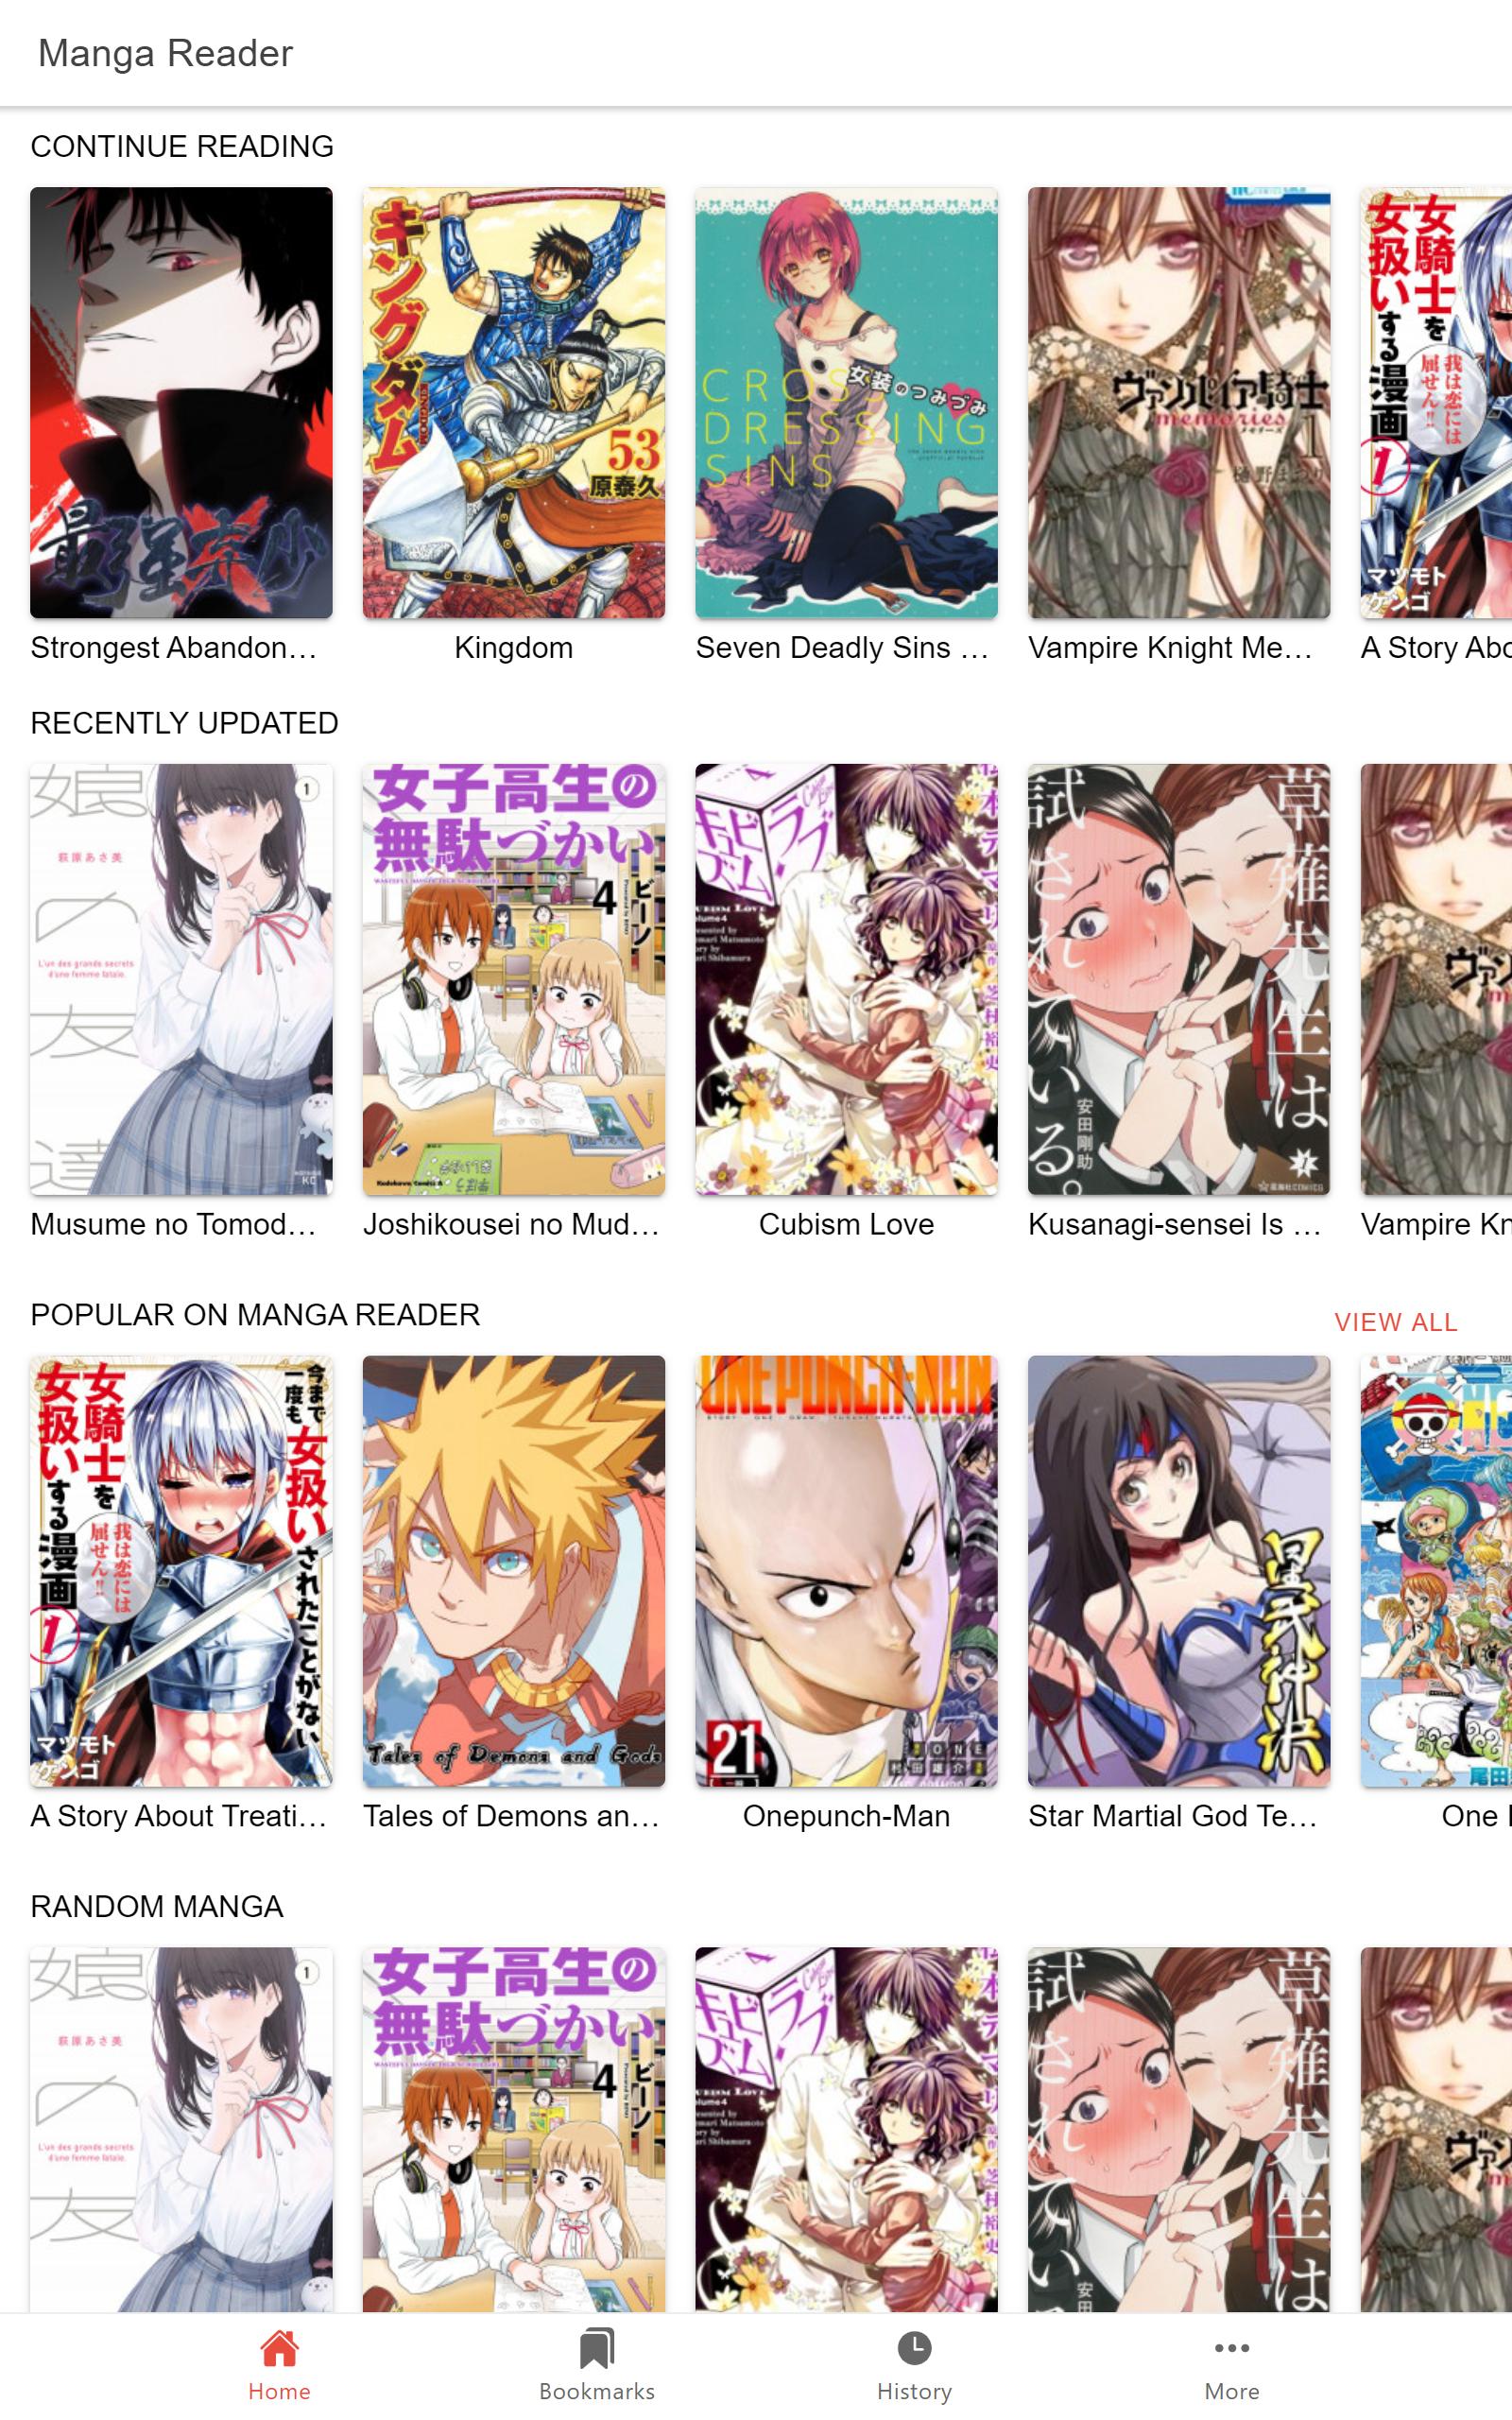 Manga Reader Read manga online free mangareader 0.0.12 Screenshot 7